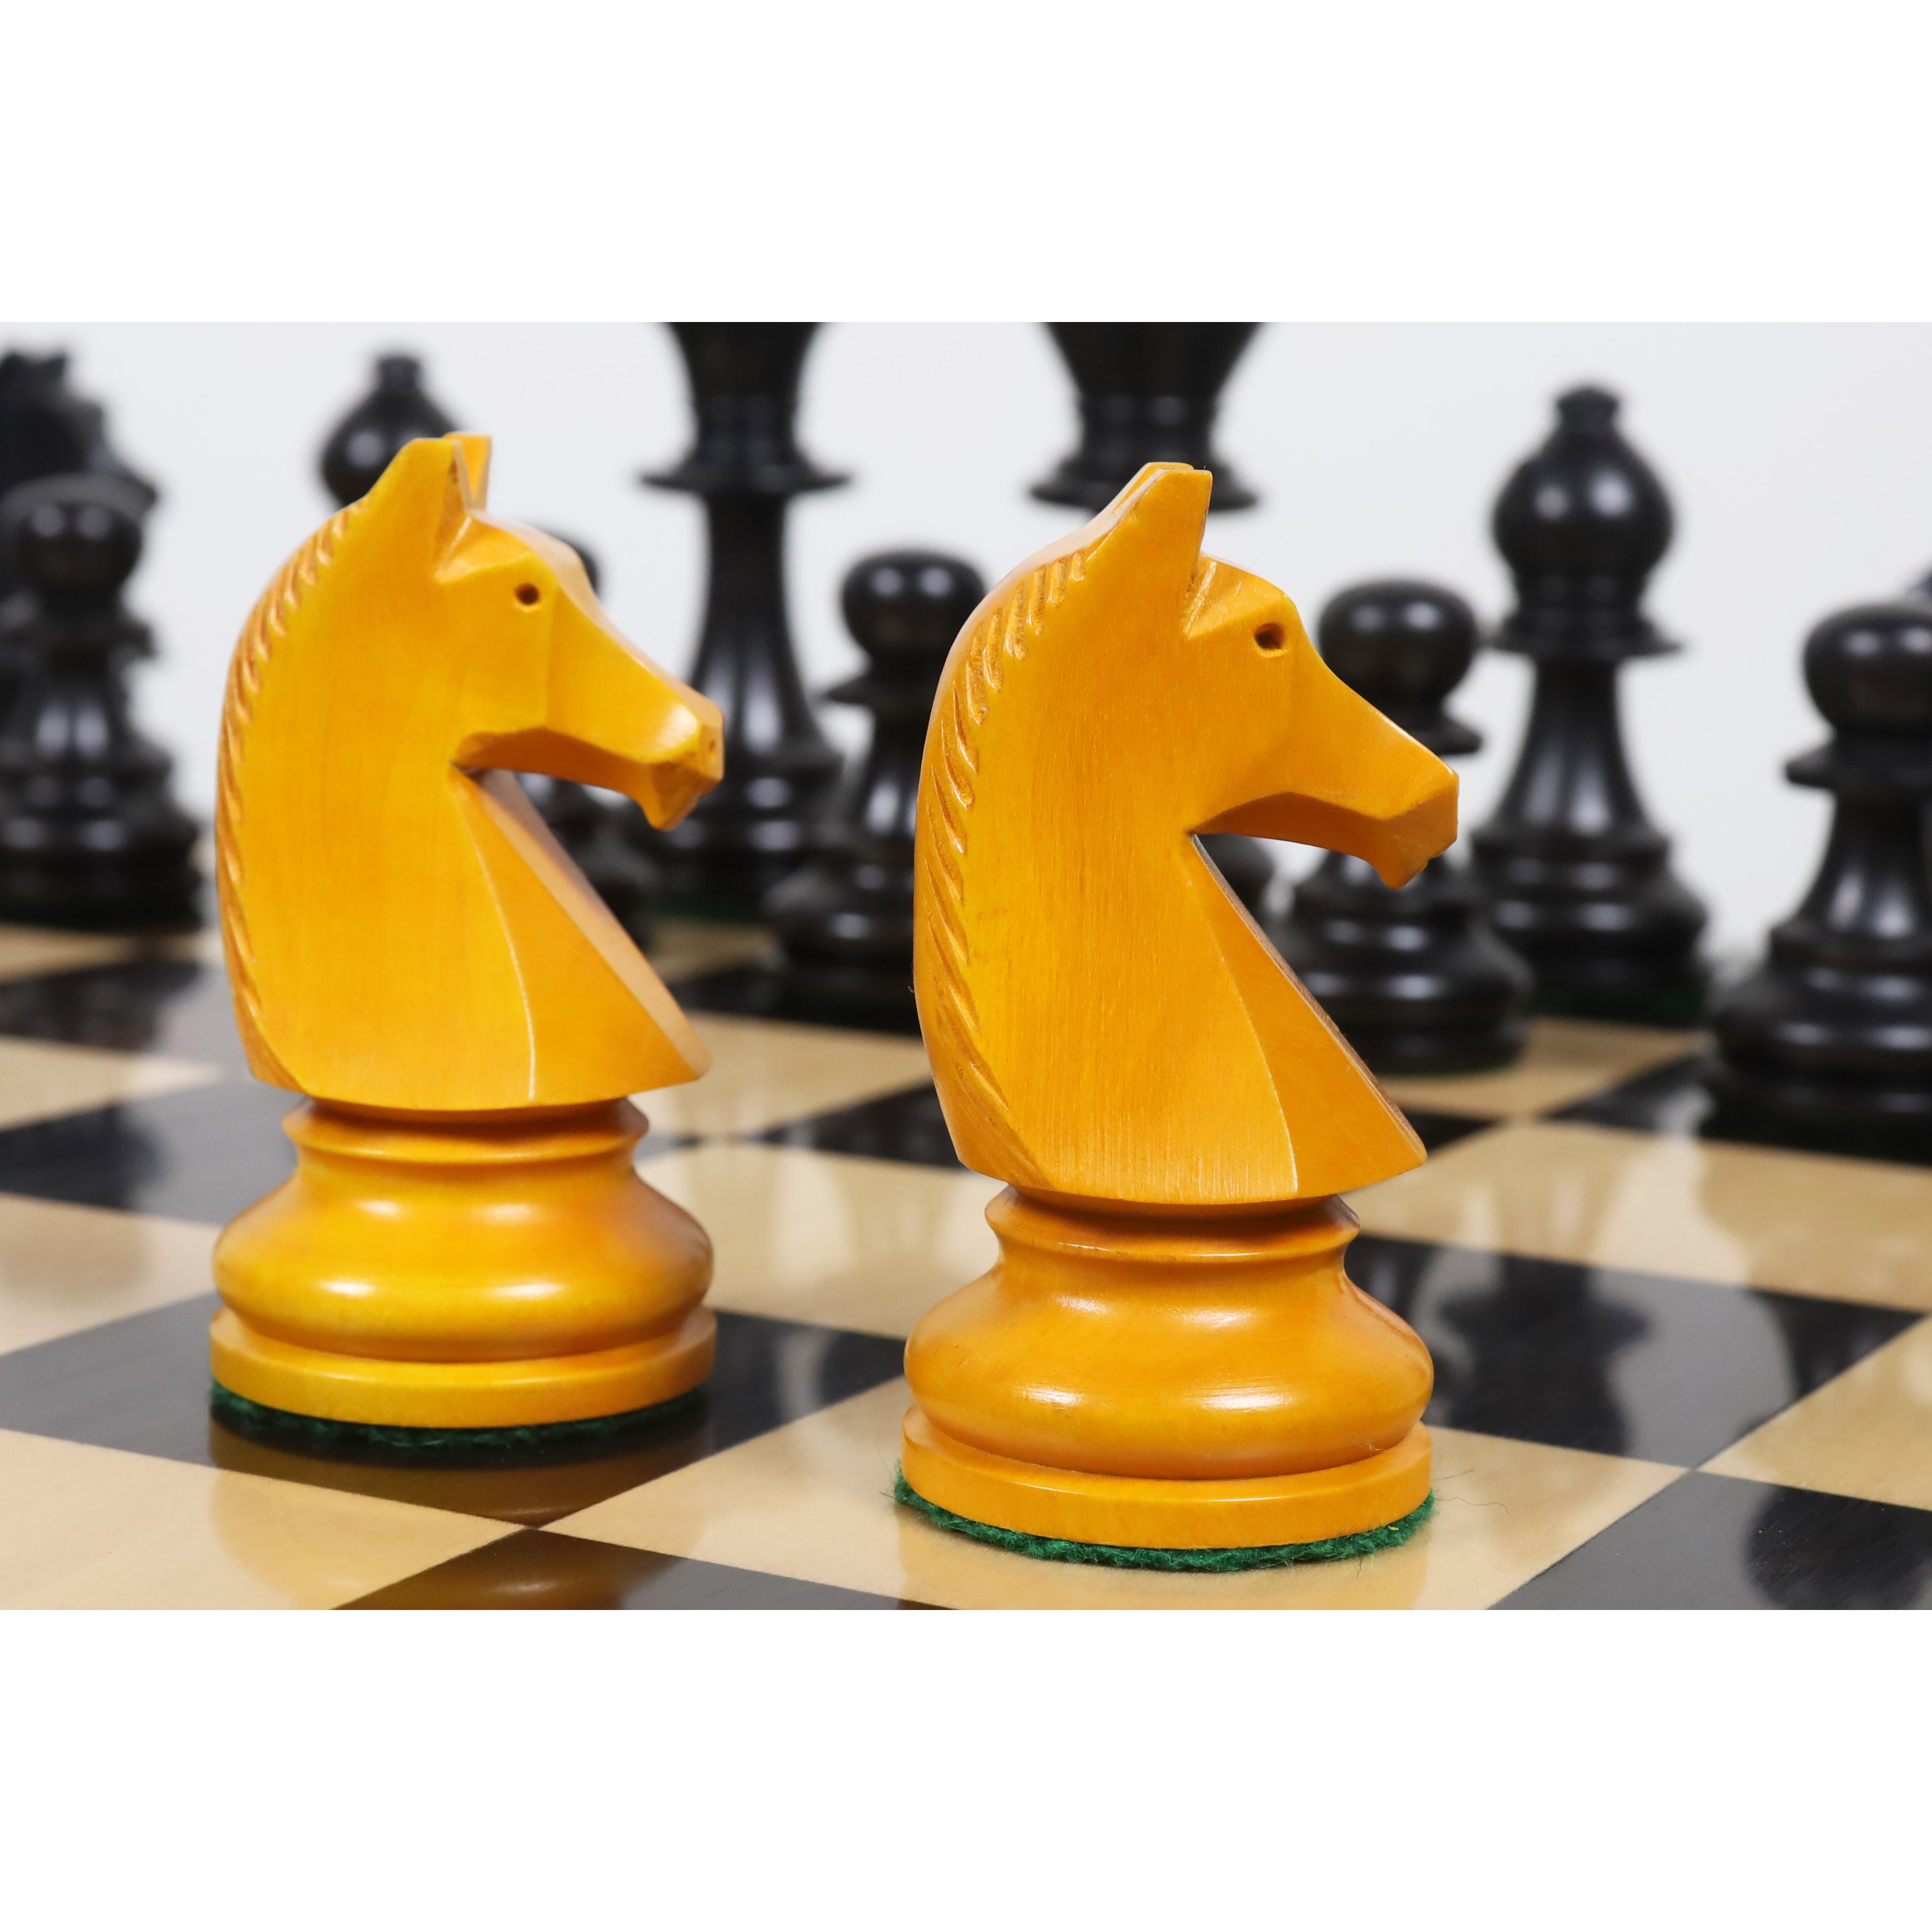 Game analysis – Michel's Chess Blog